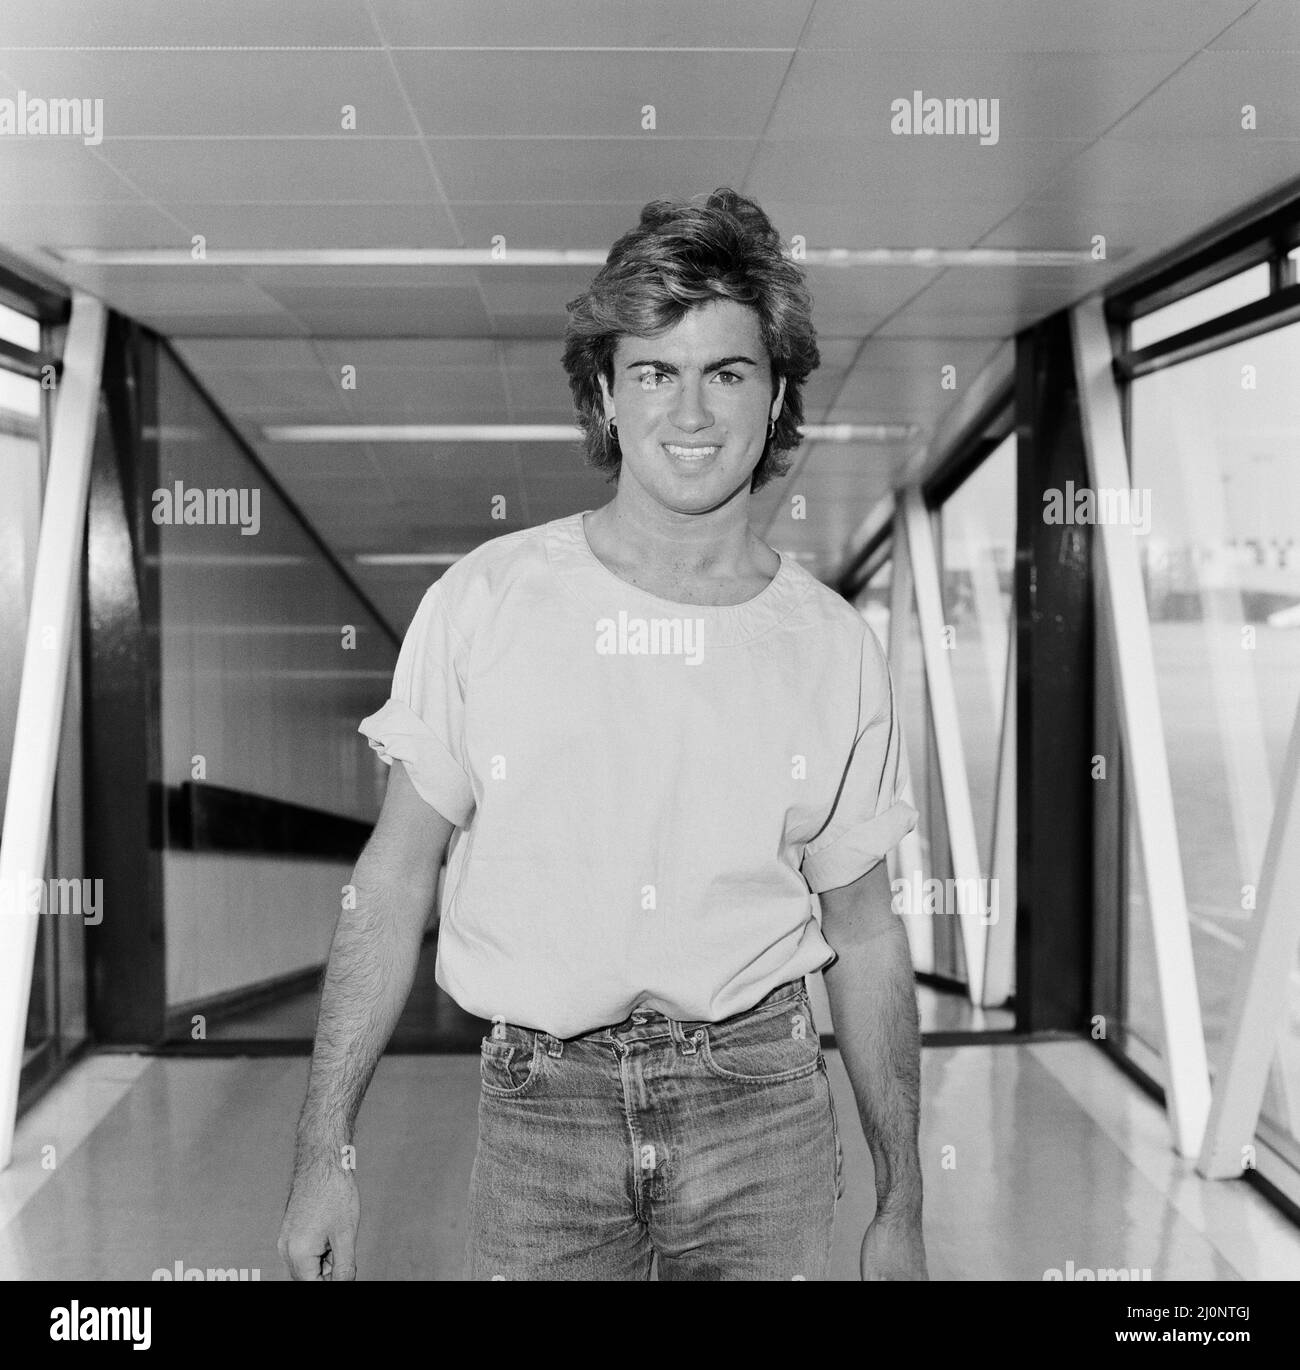 George Michael, cantante di Wham ! Arriva oggi all'aeroporto di Heathrow da Parigi. Il vero nome di George Michael è Georgios Kyriacos Panayiotou Foto scattata il 22nd agosto 1984 Foto Stock